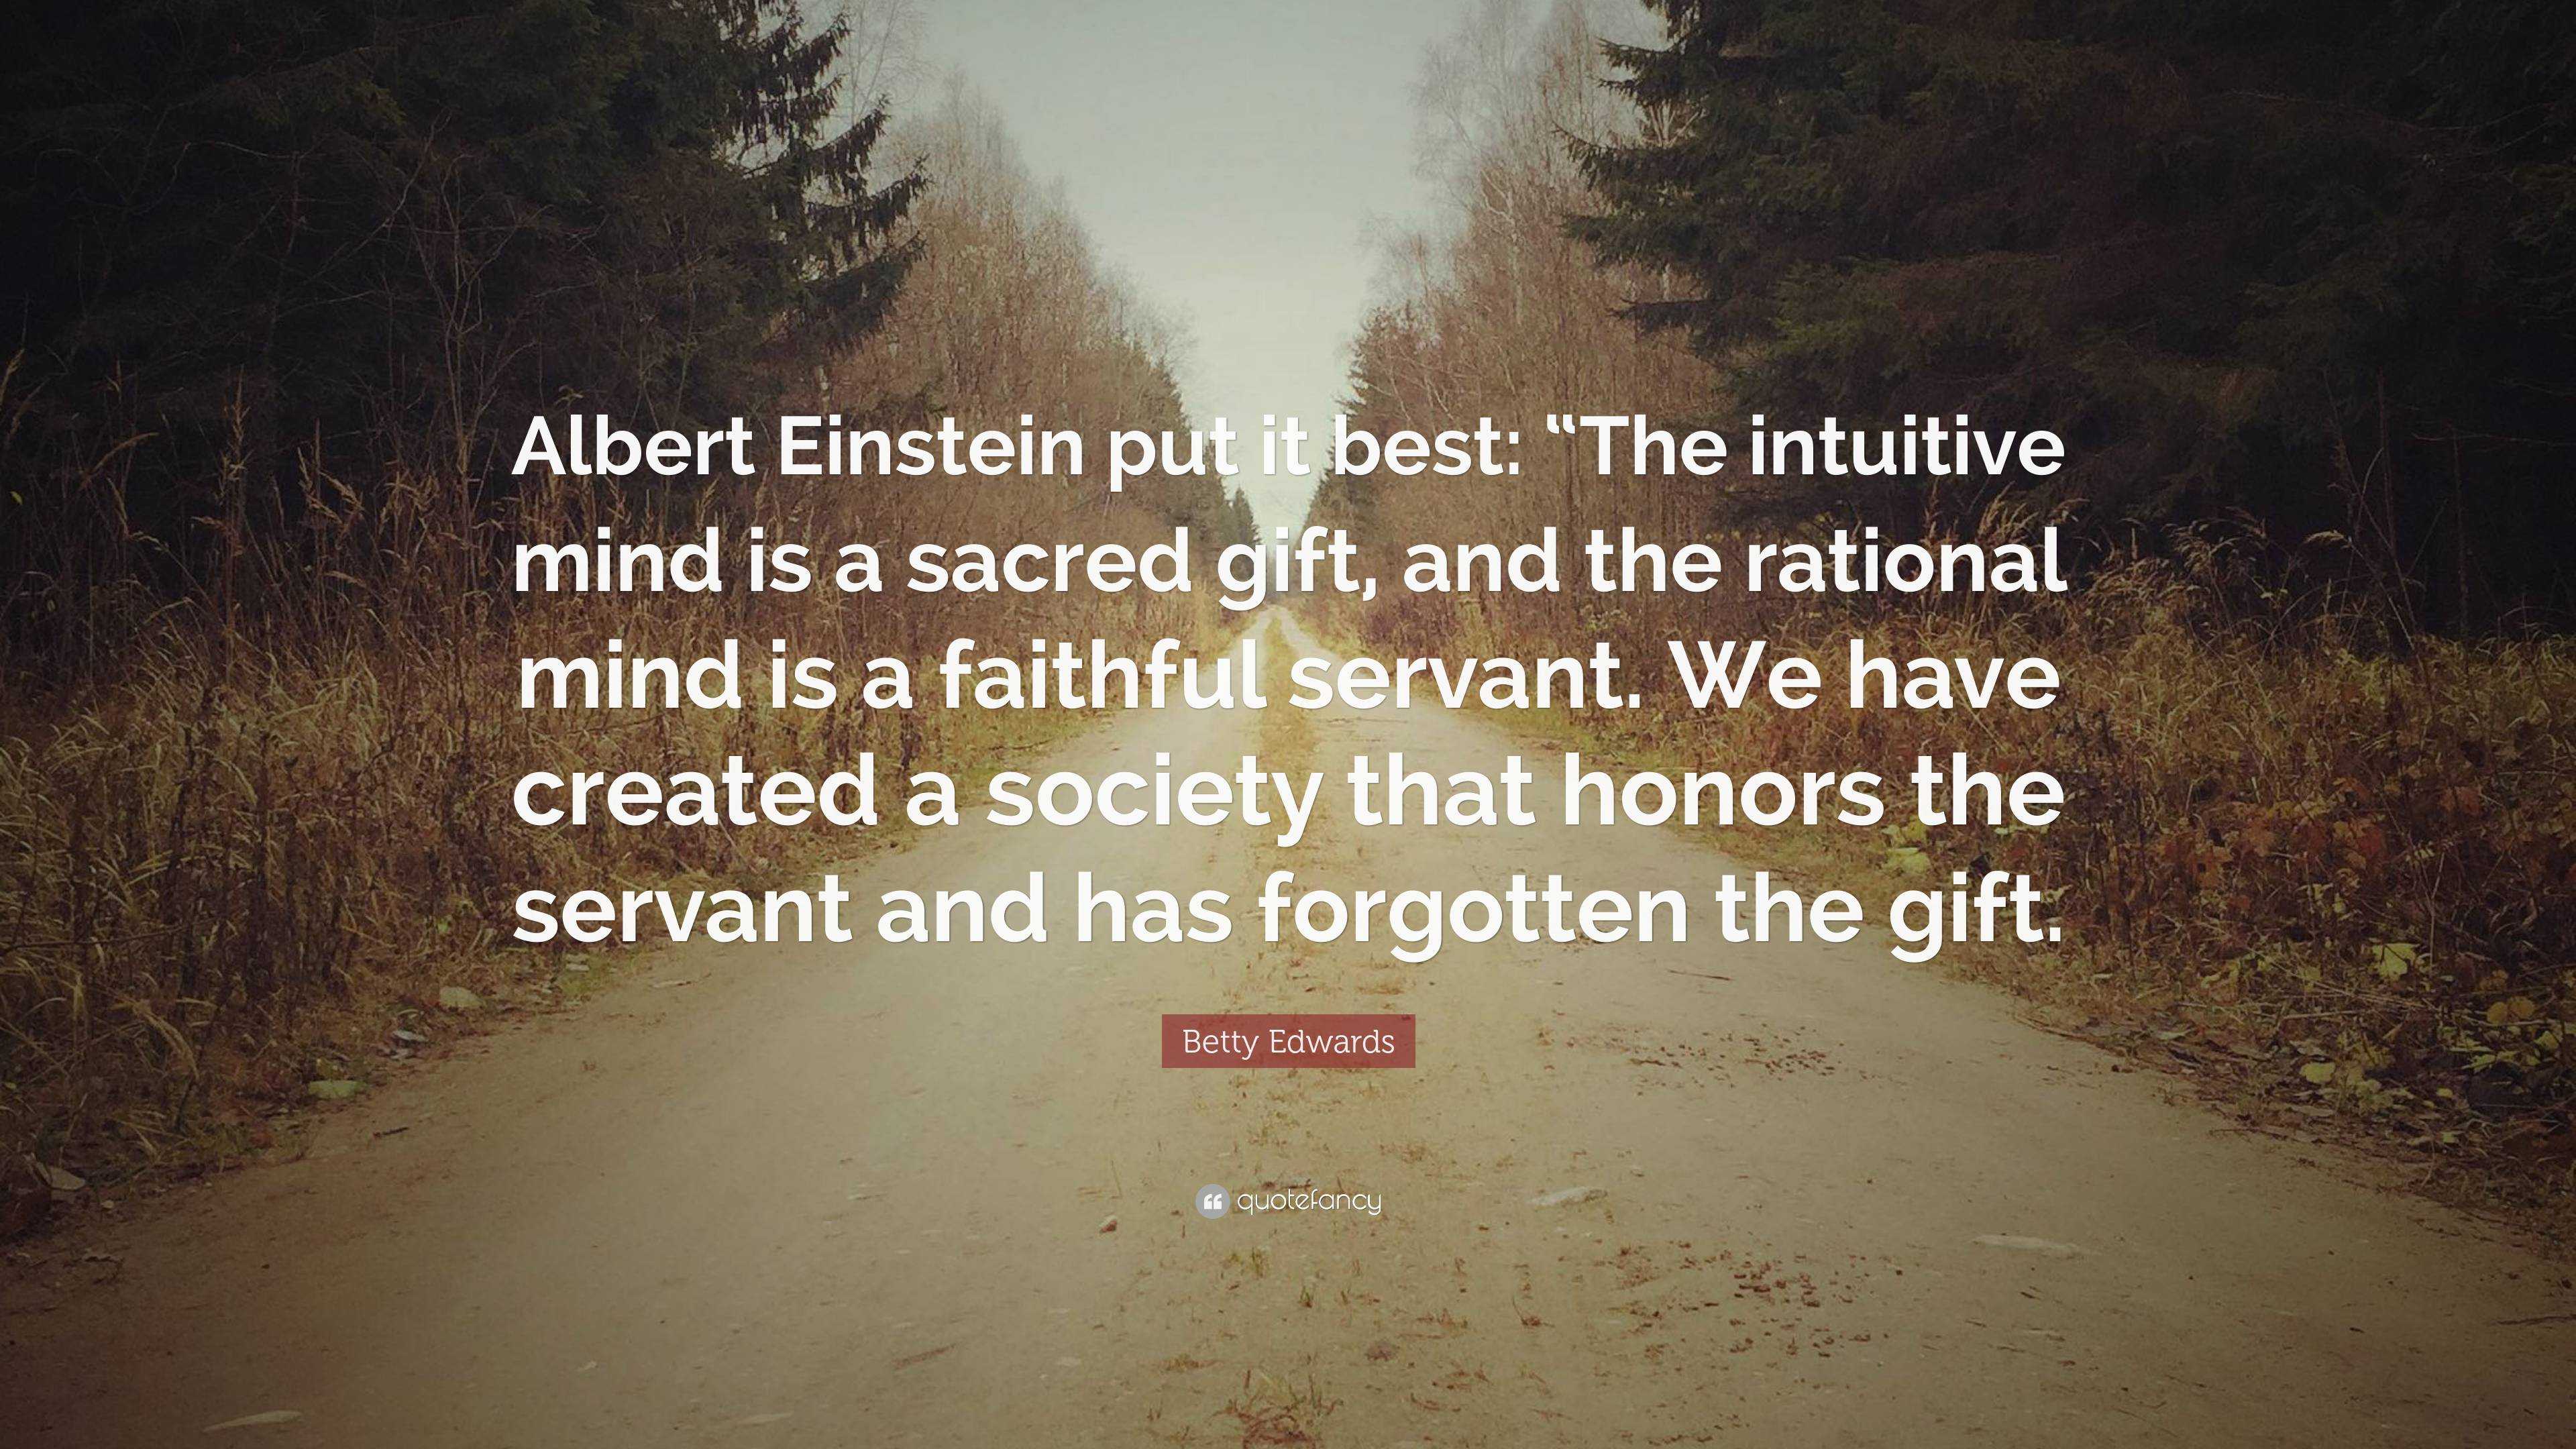 Betty Edwards Quote “Albert Einstein put it best “The intuitive mind